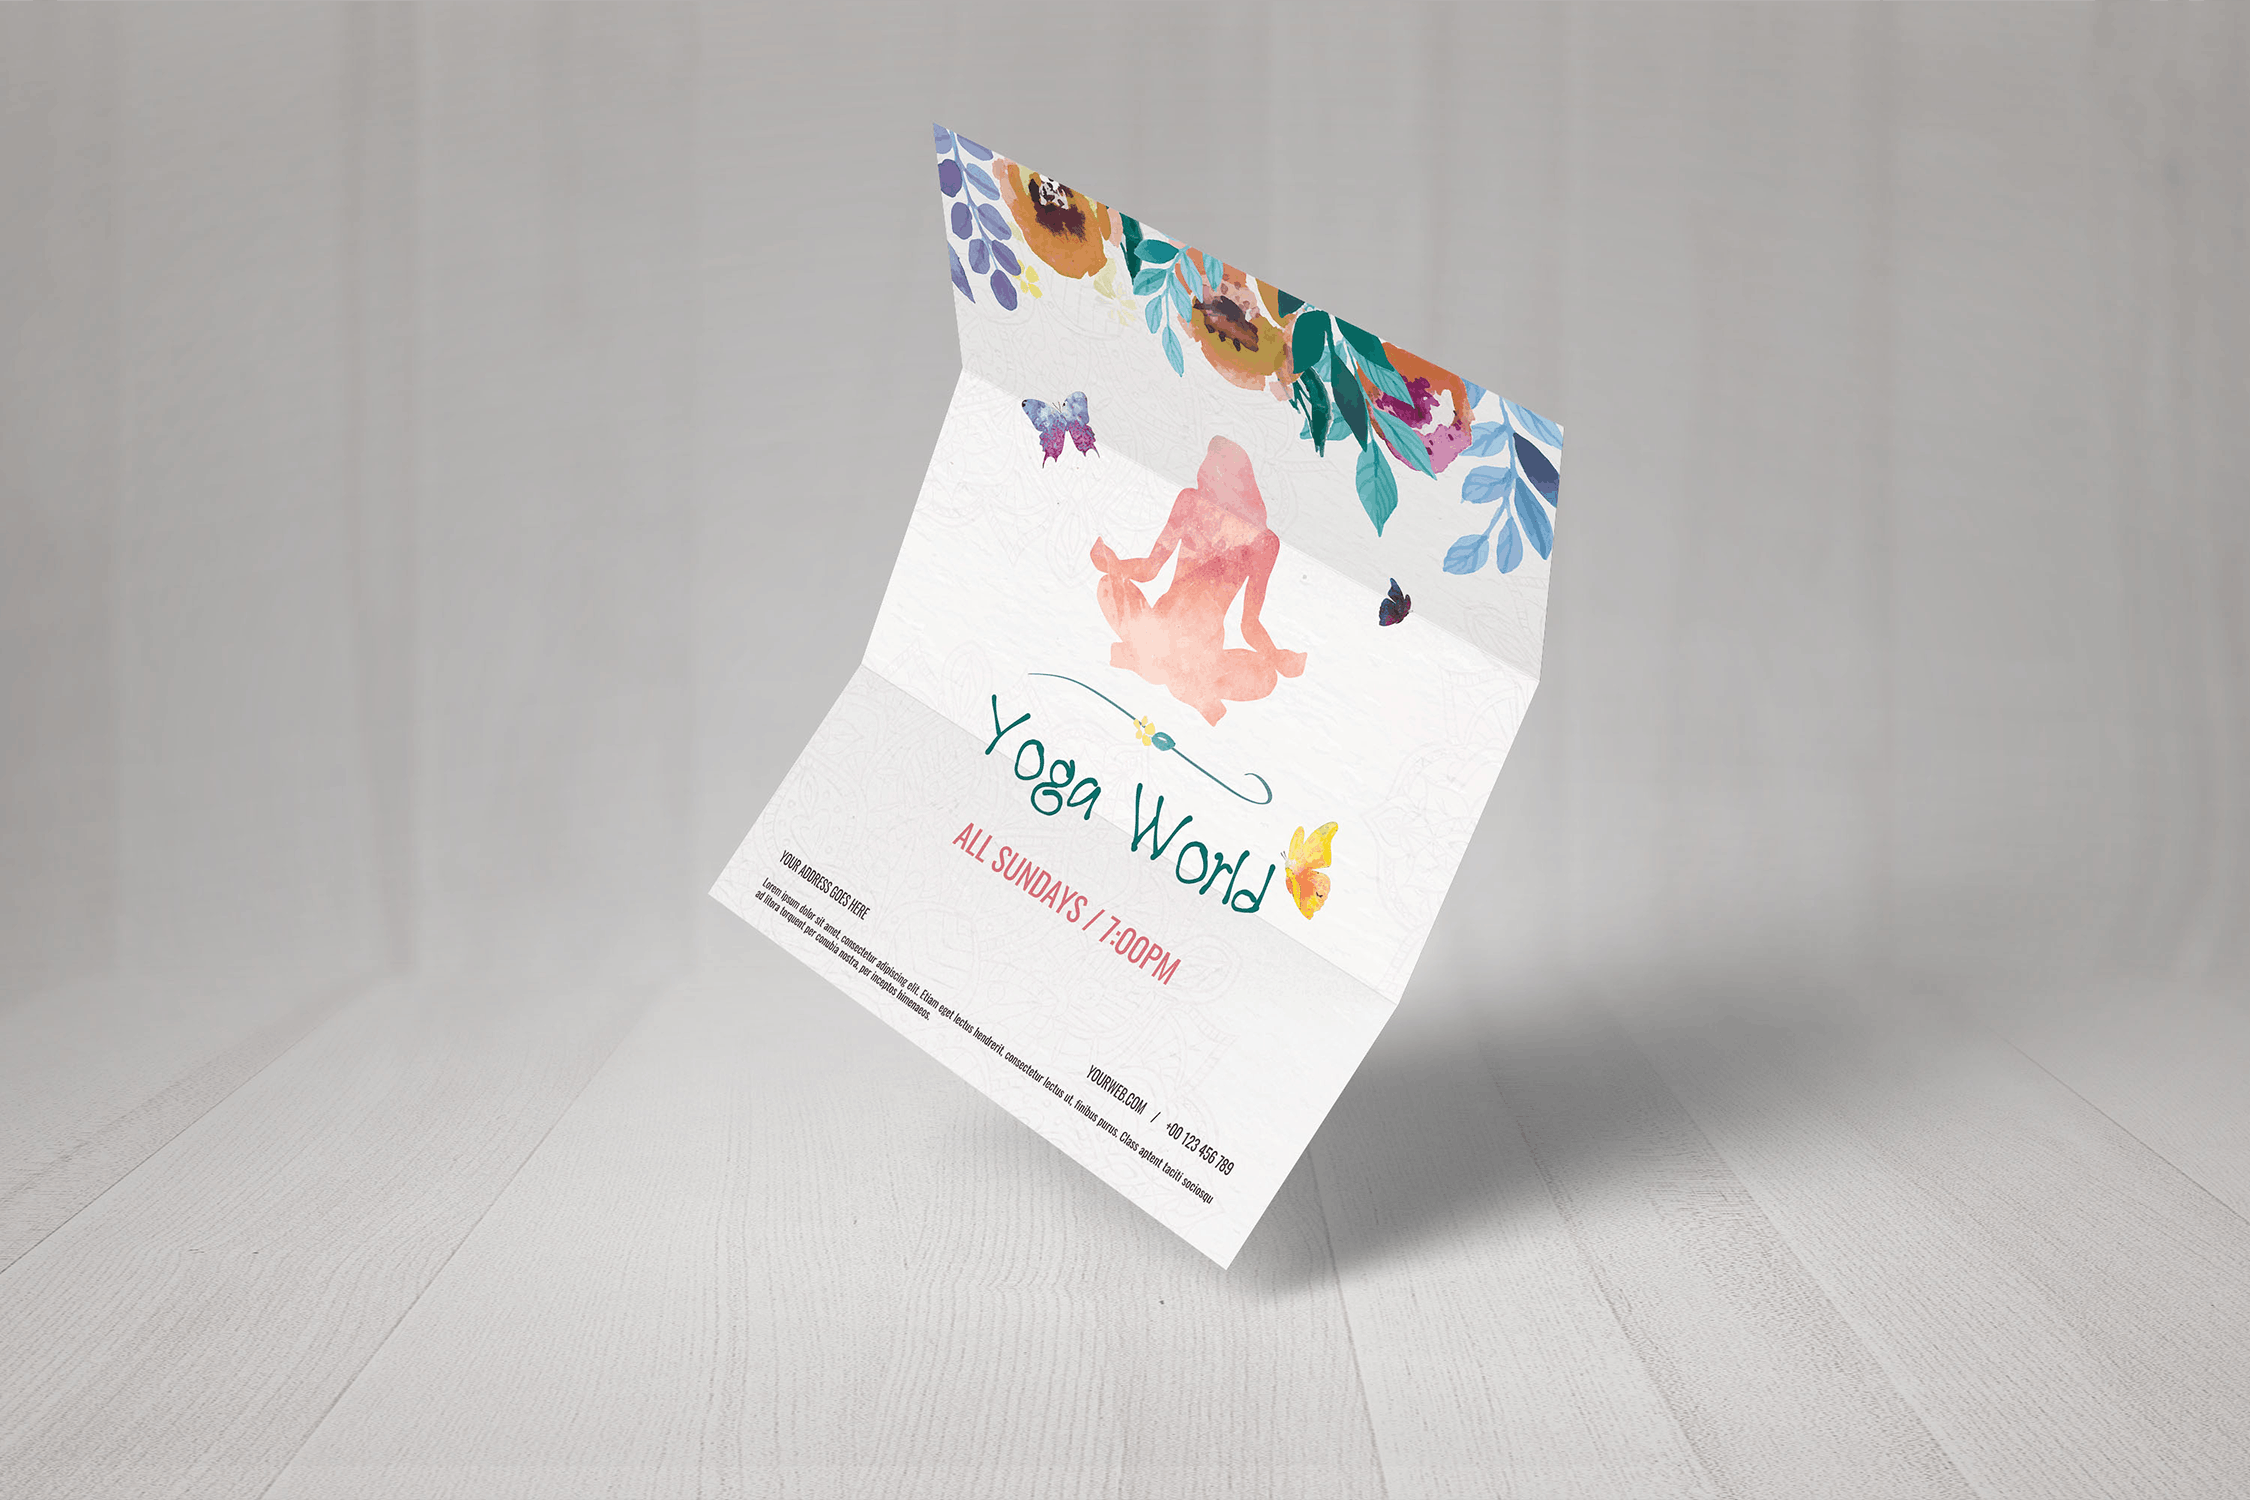 多彩水彩手绘设计风格瑜伽主题活动海报传单模板 Colorful Hand Painted Yoga World Flyer插图(2)